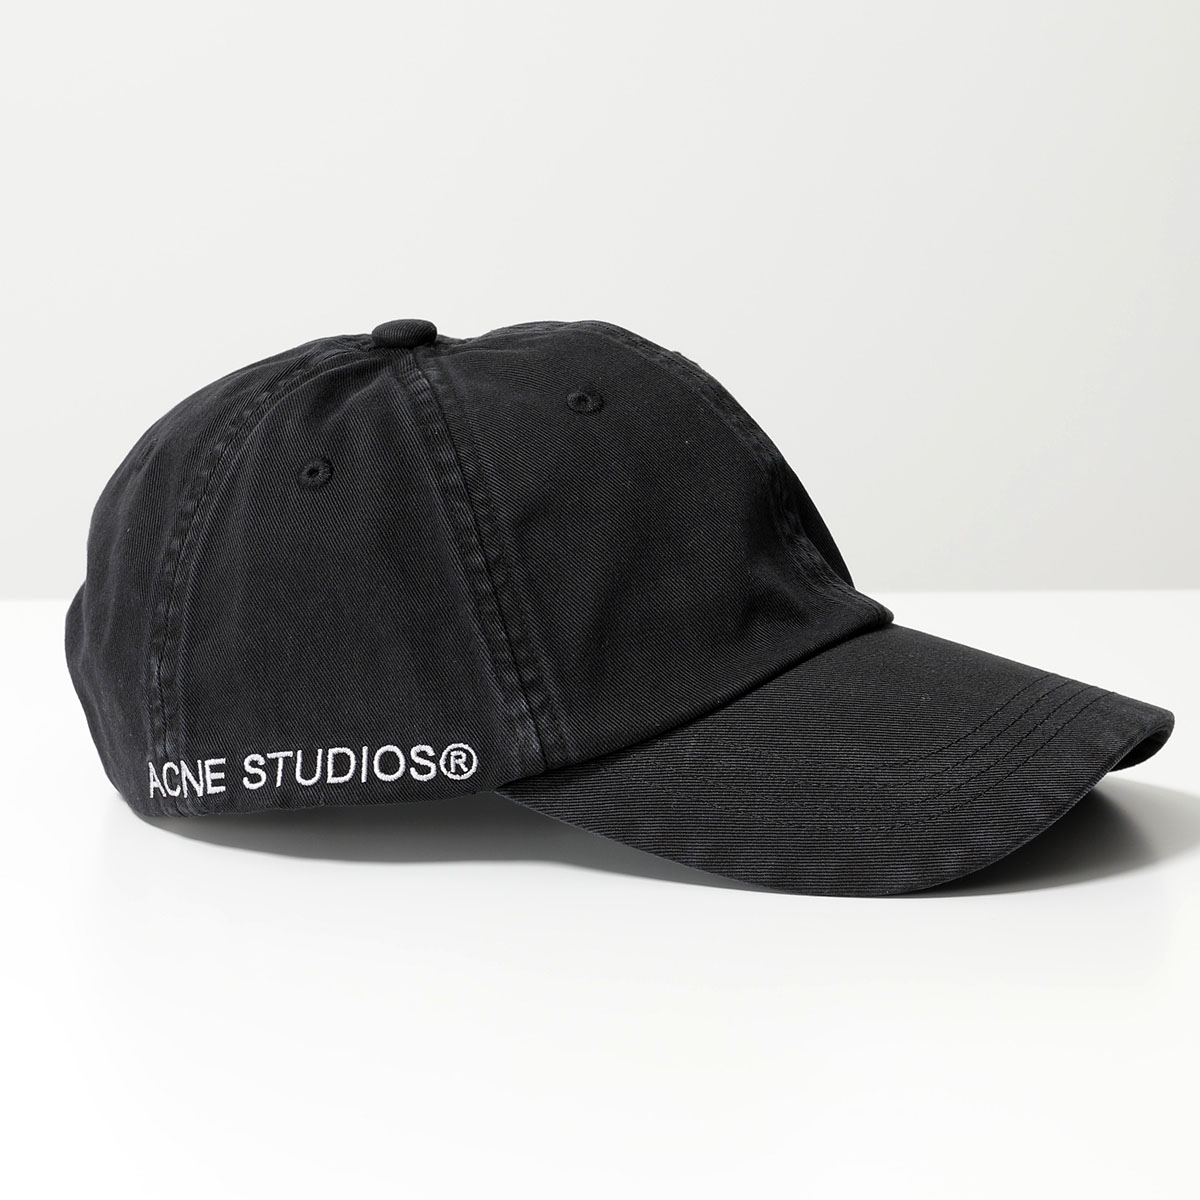 Acne Studios アクネストゥディオズ ベースボールキャップ C40329 FN-UX-HATS000244 メンズ コットン ロゴ 刺繍  帽子 900/Black : 360126676 : インポートセレクト musee - 通販 - Yahoo!ショッピング